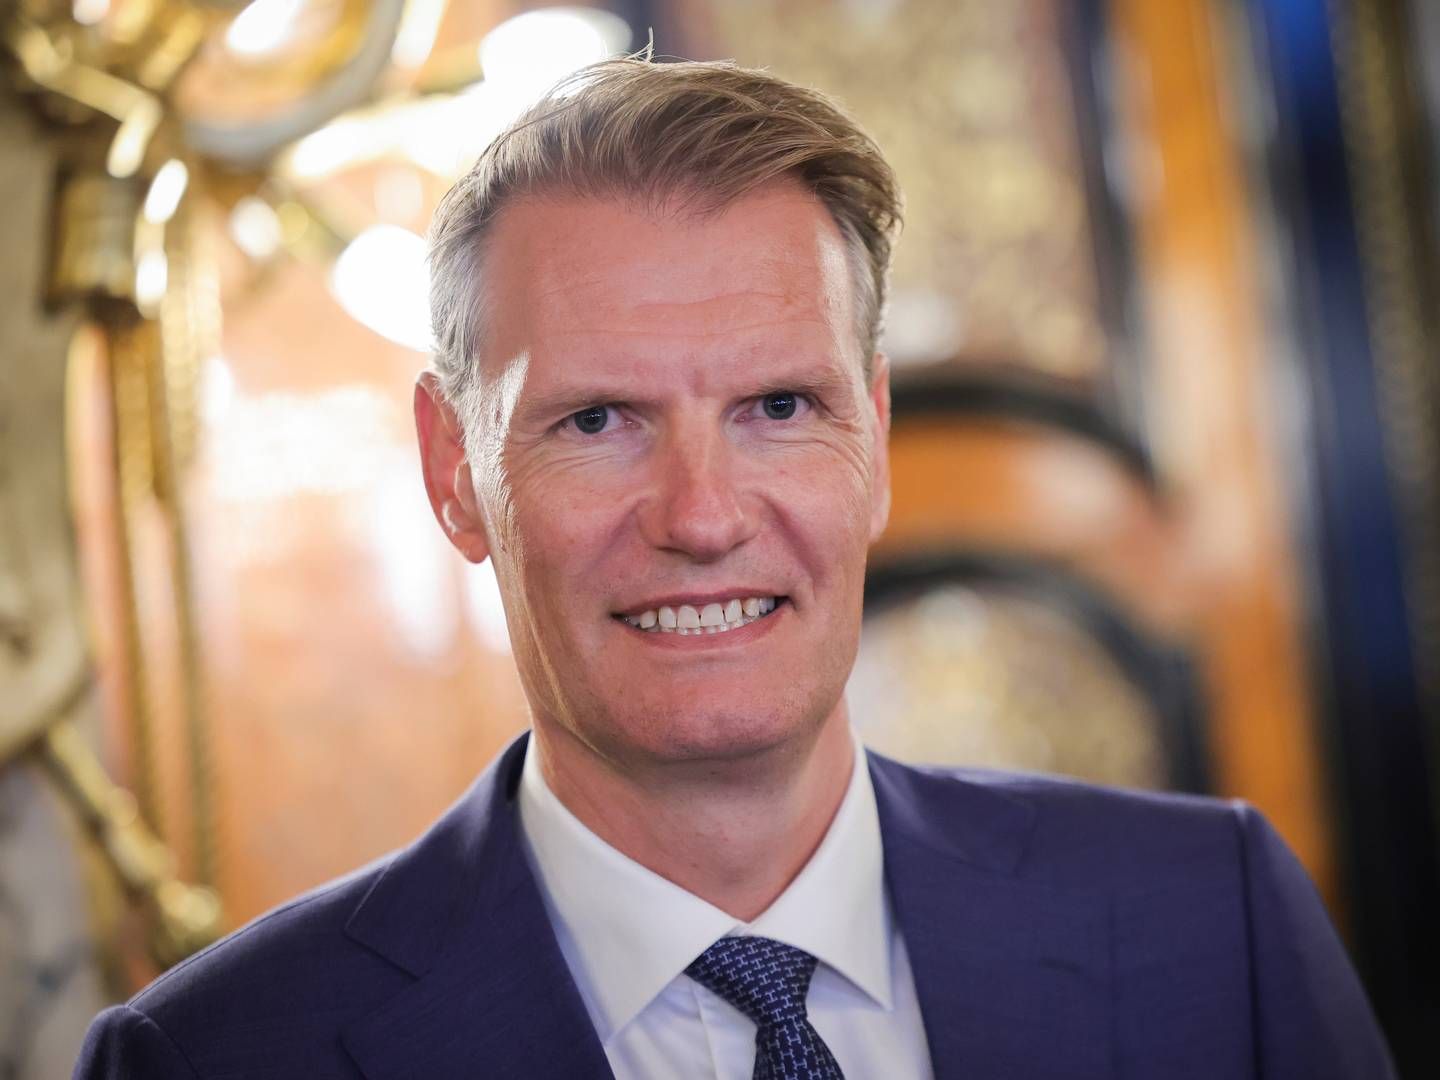 Det største rederi i verden MSC, der har danskeren Søren Toft som adm. direktør, er midt i de afsluttende forhandlinger om at købe den franske logistikkoncern Clasquin.